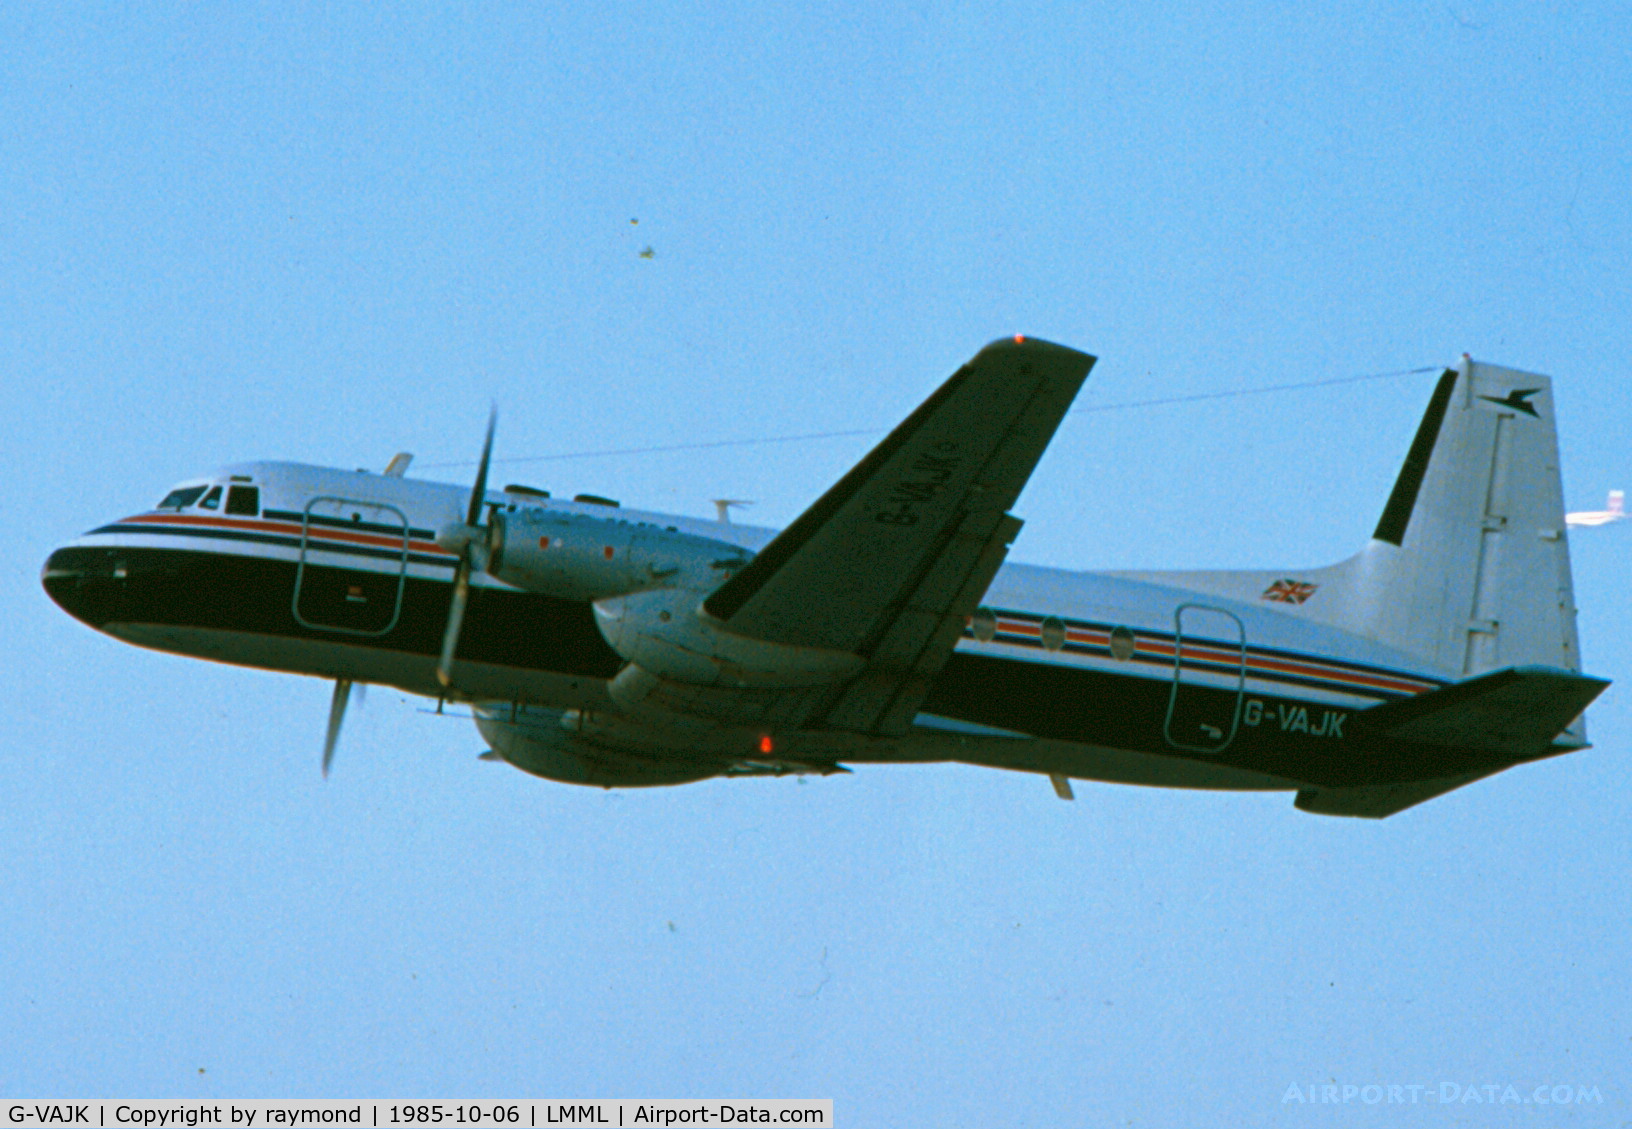 G-VAJK, 1963 Avro 748 Series 1 C/N 1557, HS748 G-VAJK Tunisavia